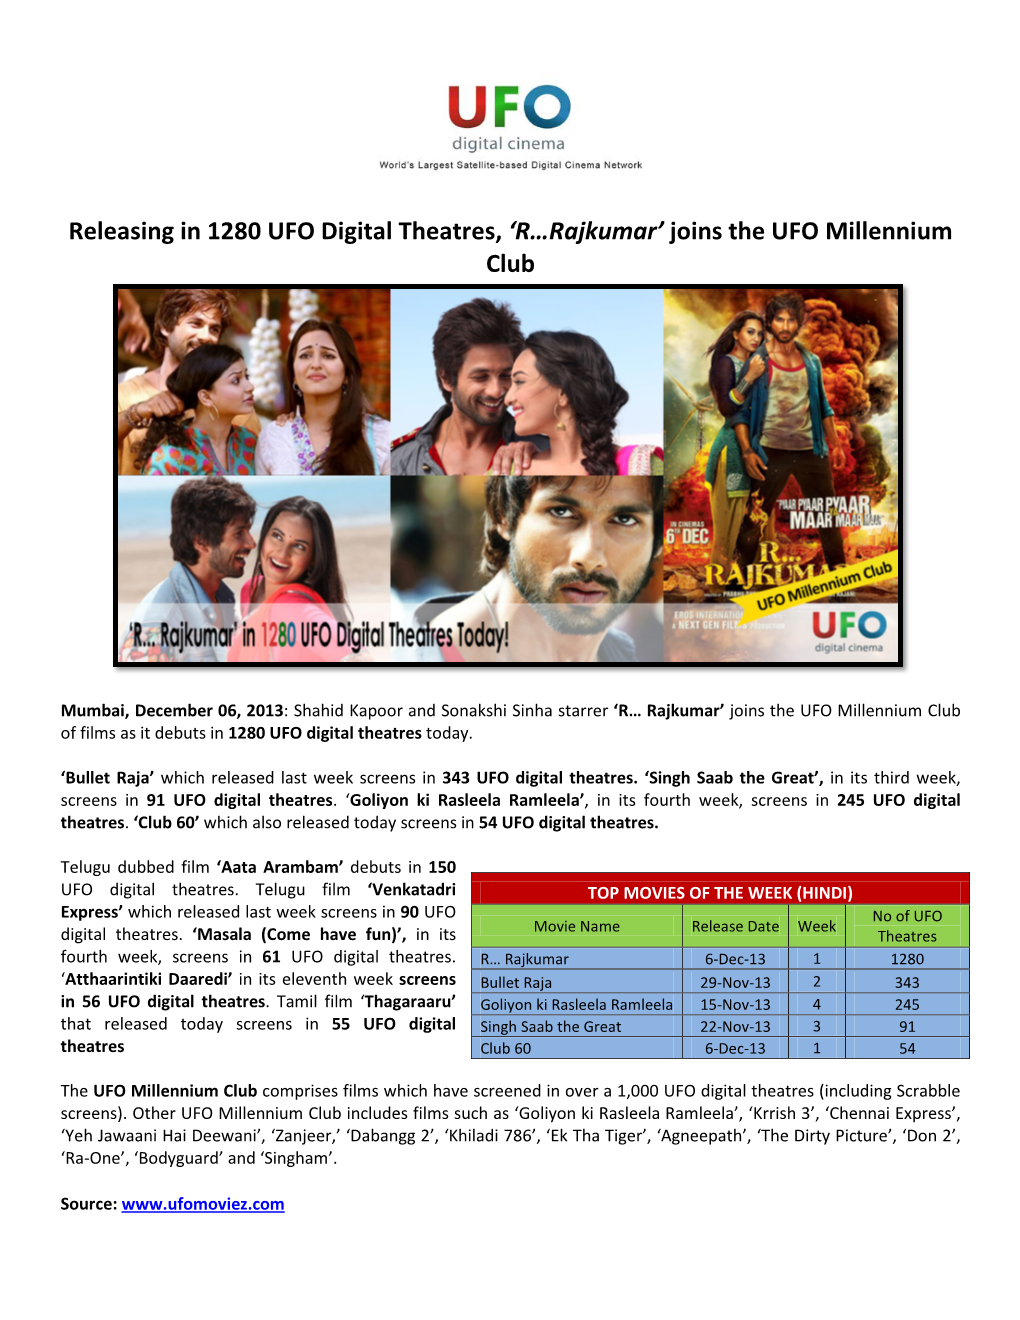 Releasing in 1280 UFO Digital Theatres, 'R…Rajkumar' Joins The